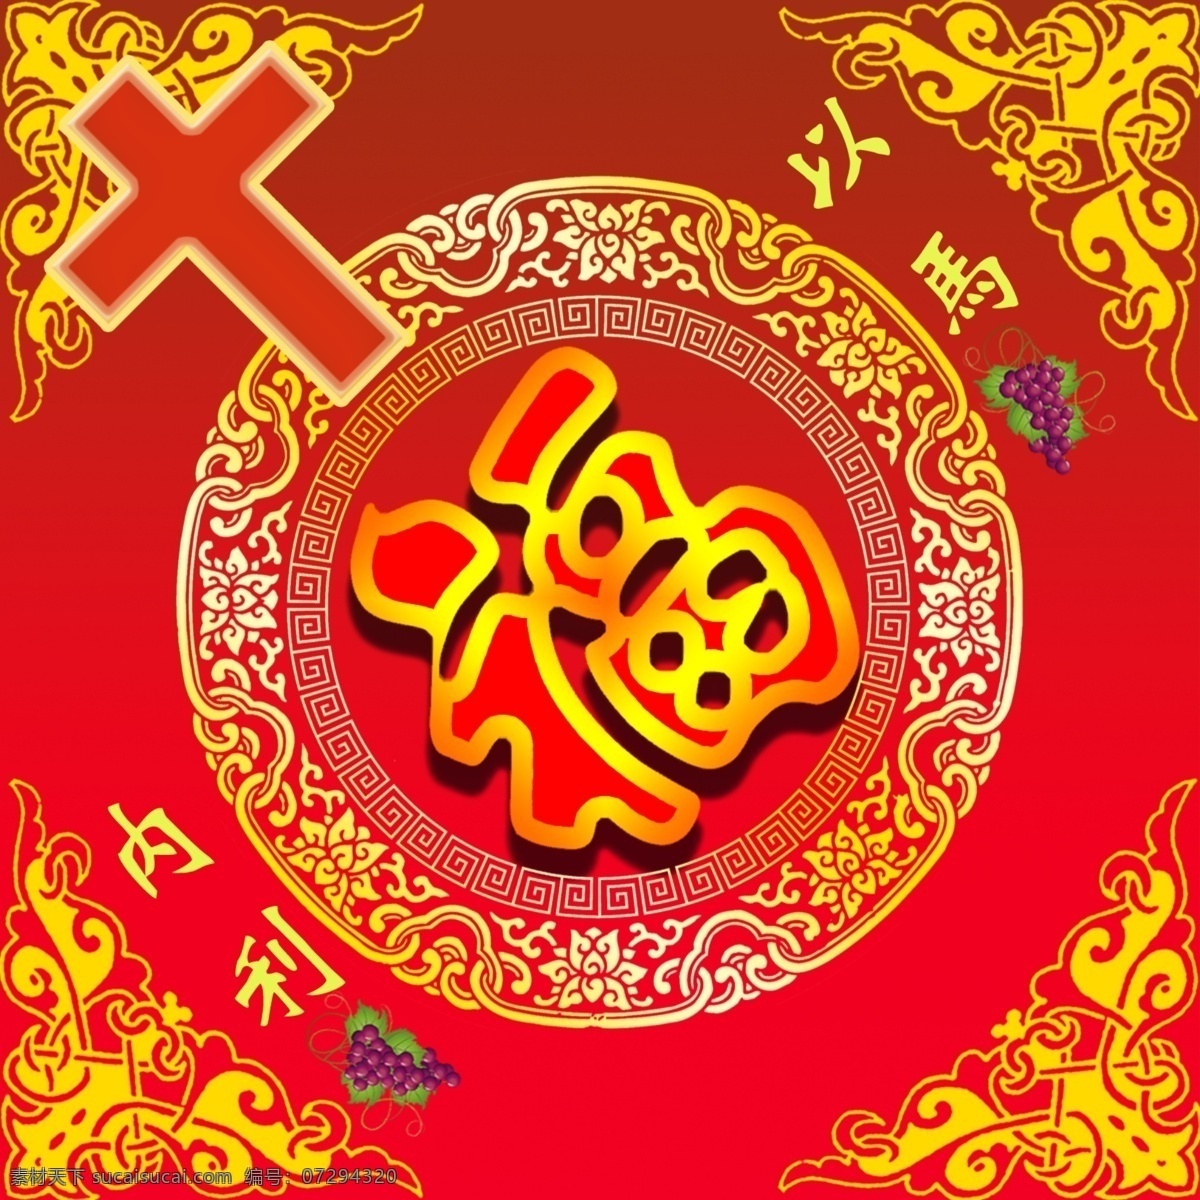 基督教 春节 福字 福 十字架 以马内利 葡萄 中国古典 边纹 花纹 新年 红色 黄色 方形 写真 喷绘 节日 分层